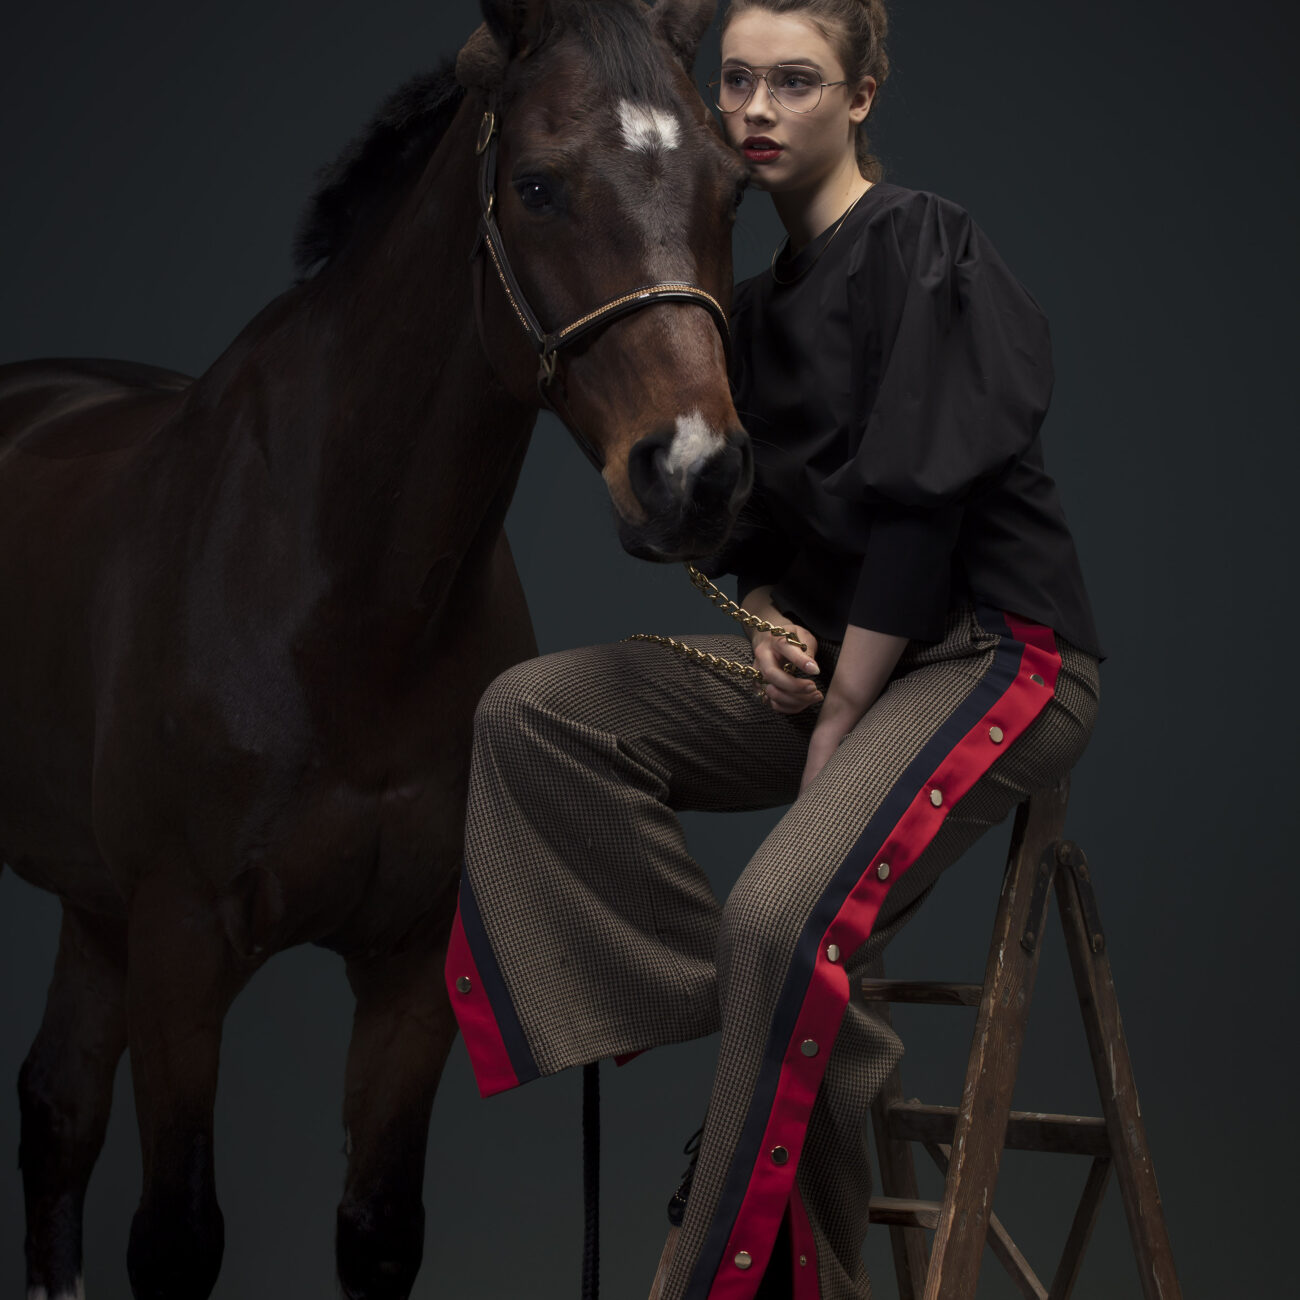 Editorial Photography | Serie Horse | Studioaufnahme mit Pferd und Model 003